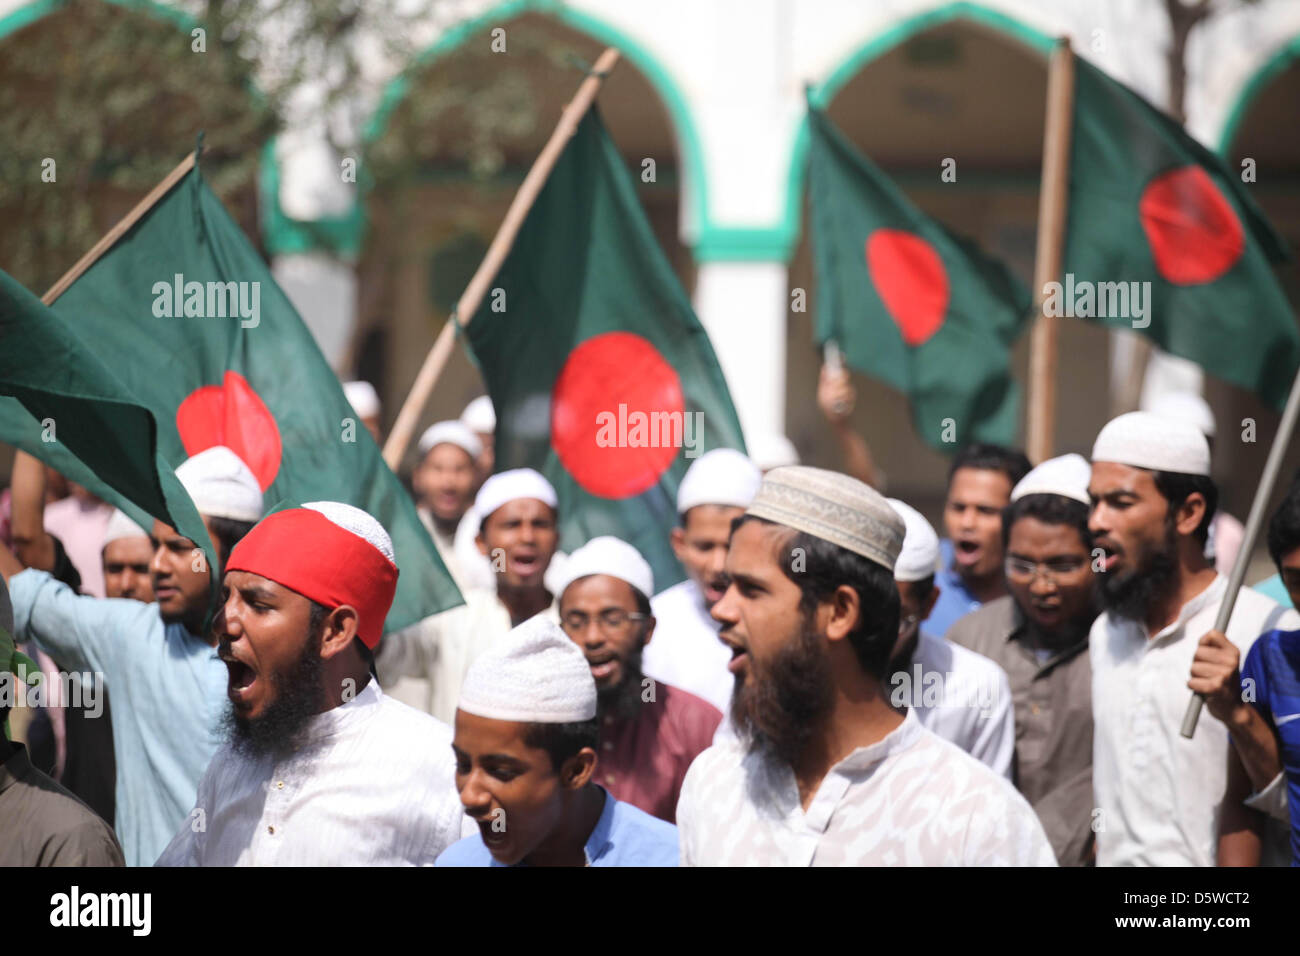 Hefazot-I-Islam, miembros y simpatizantes del partido político representado como ellos agitar banderas y gritaron consignas mientras que da apoyo a una huelga nacional en Kamrangirchar en la capital, Dhaka, 8 de abril de 2013. Una huelga nacional convocada por Hefajat-e-Islam llamado por orden, para reiterar una serie de demandas y empuje para el juicio de un Ateo blogger. Foto de stock